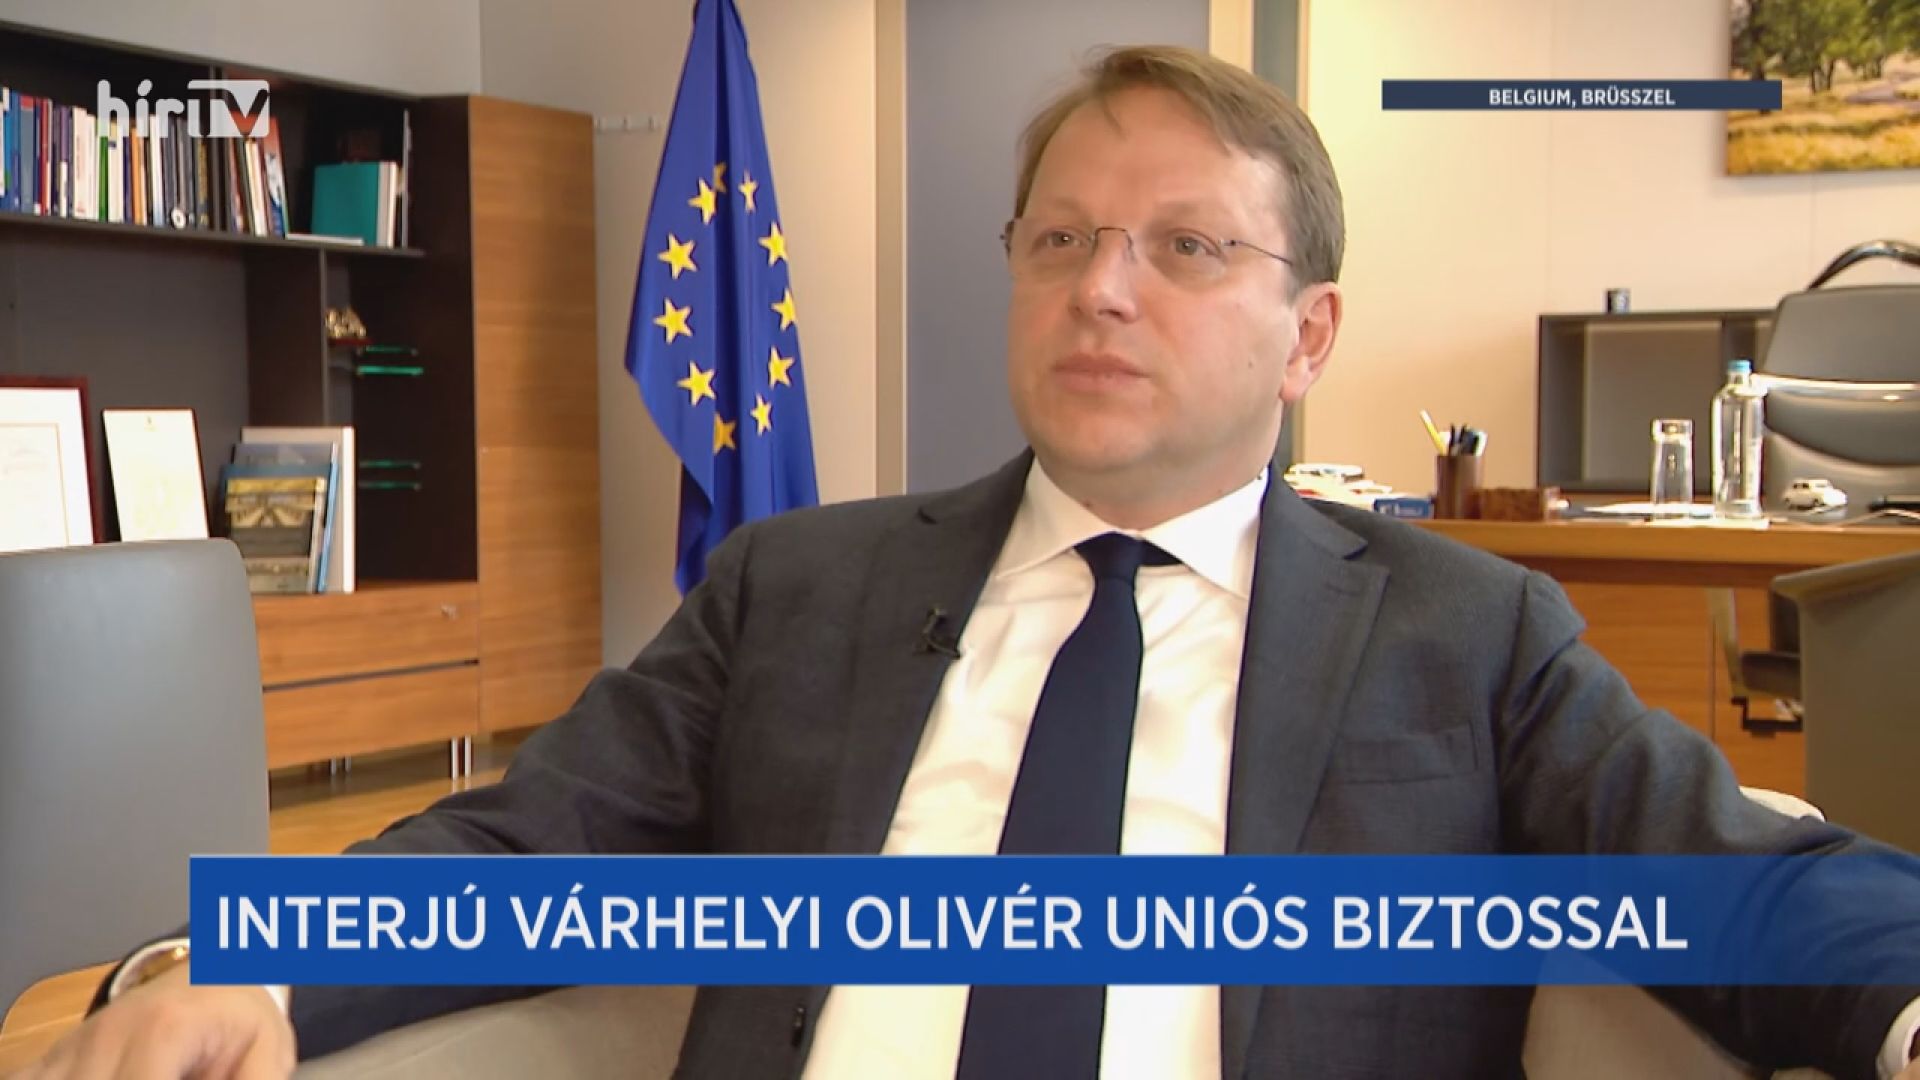 Európai híradó: Exkluzív interjú Várhelyi Olivérrel!